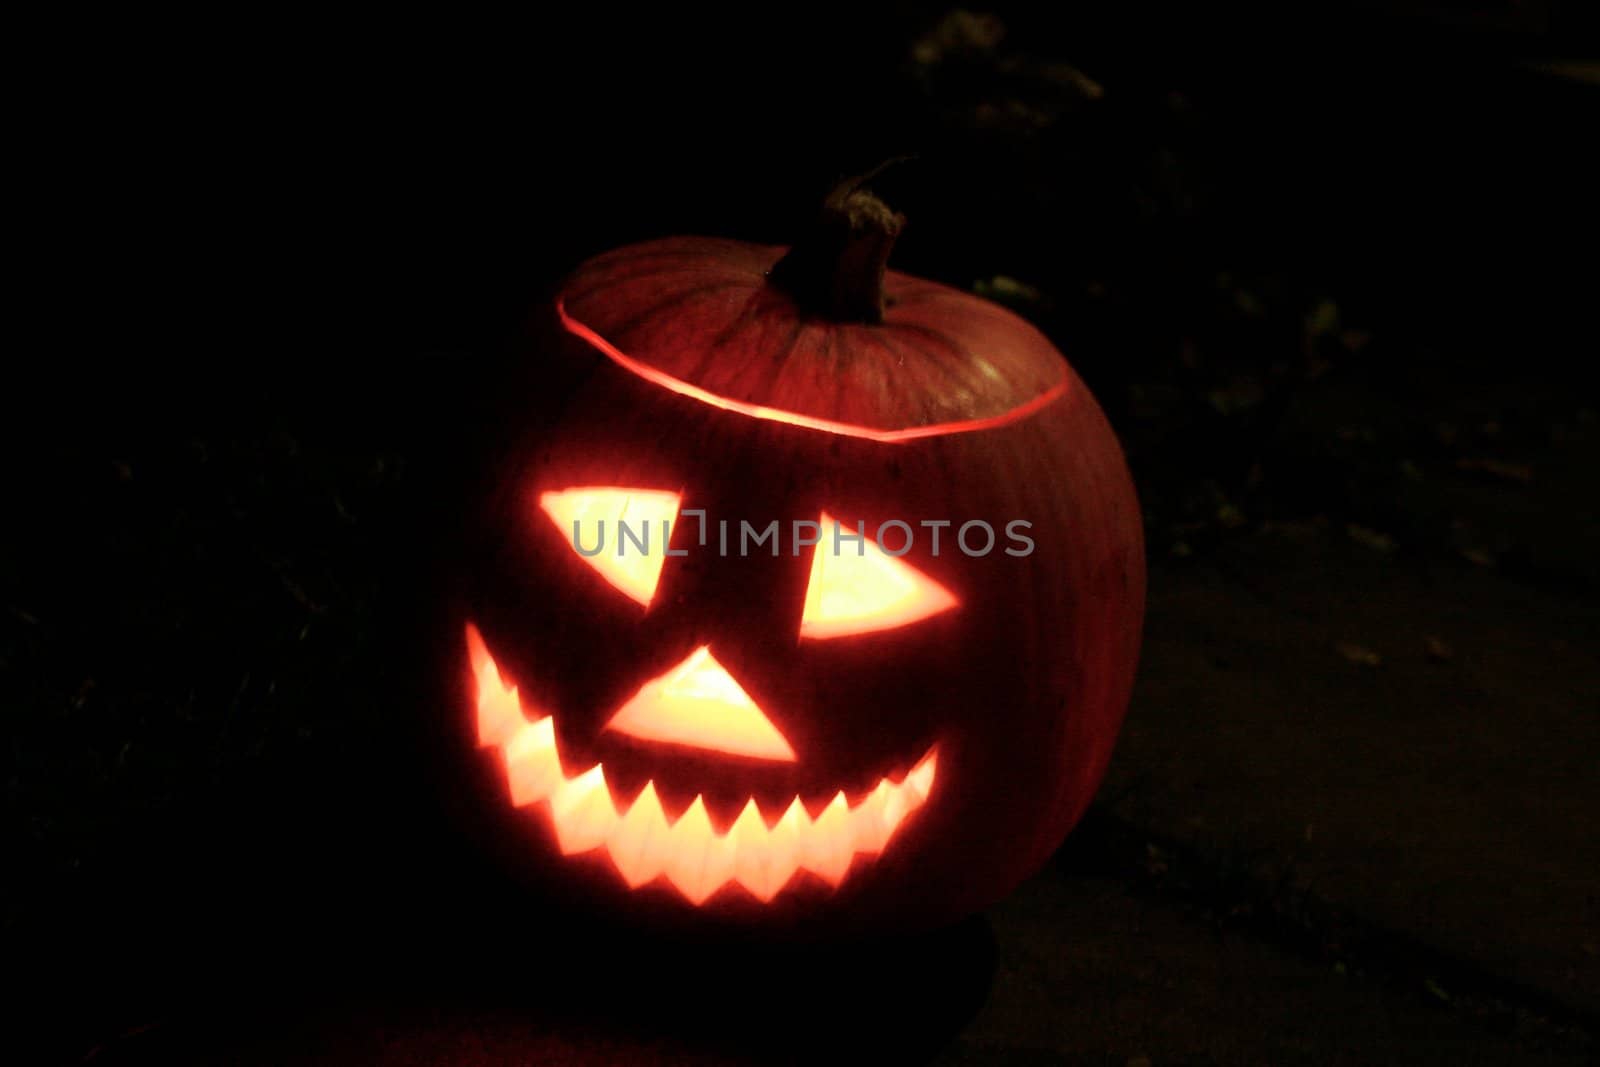 a halloween jack-o-lantern glowing in the dark